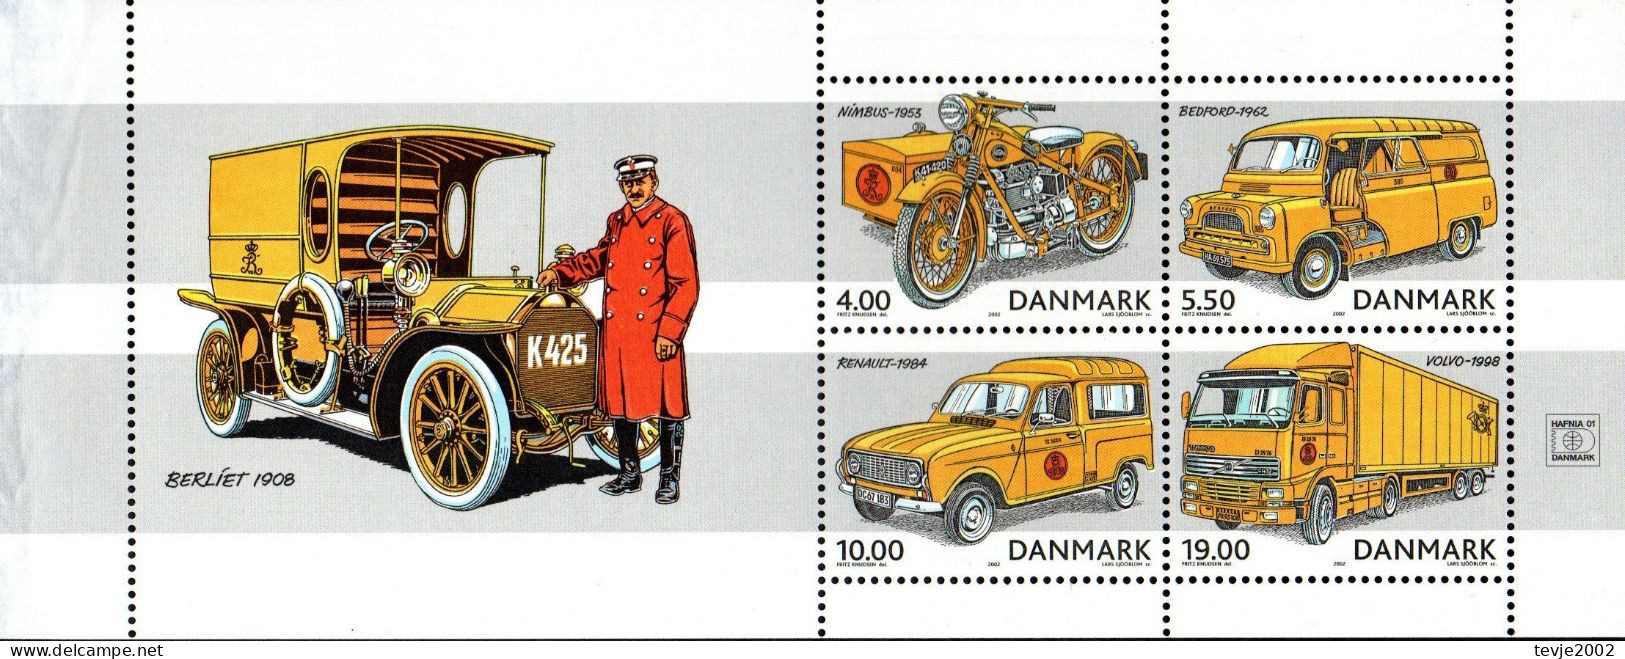 Dänemark 2002 - Mi.Nr. 1312 - 1315 (aus Markenheftchen) - Postfrisch MNH - Post - Ungebraucht